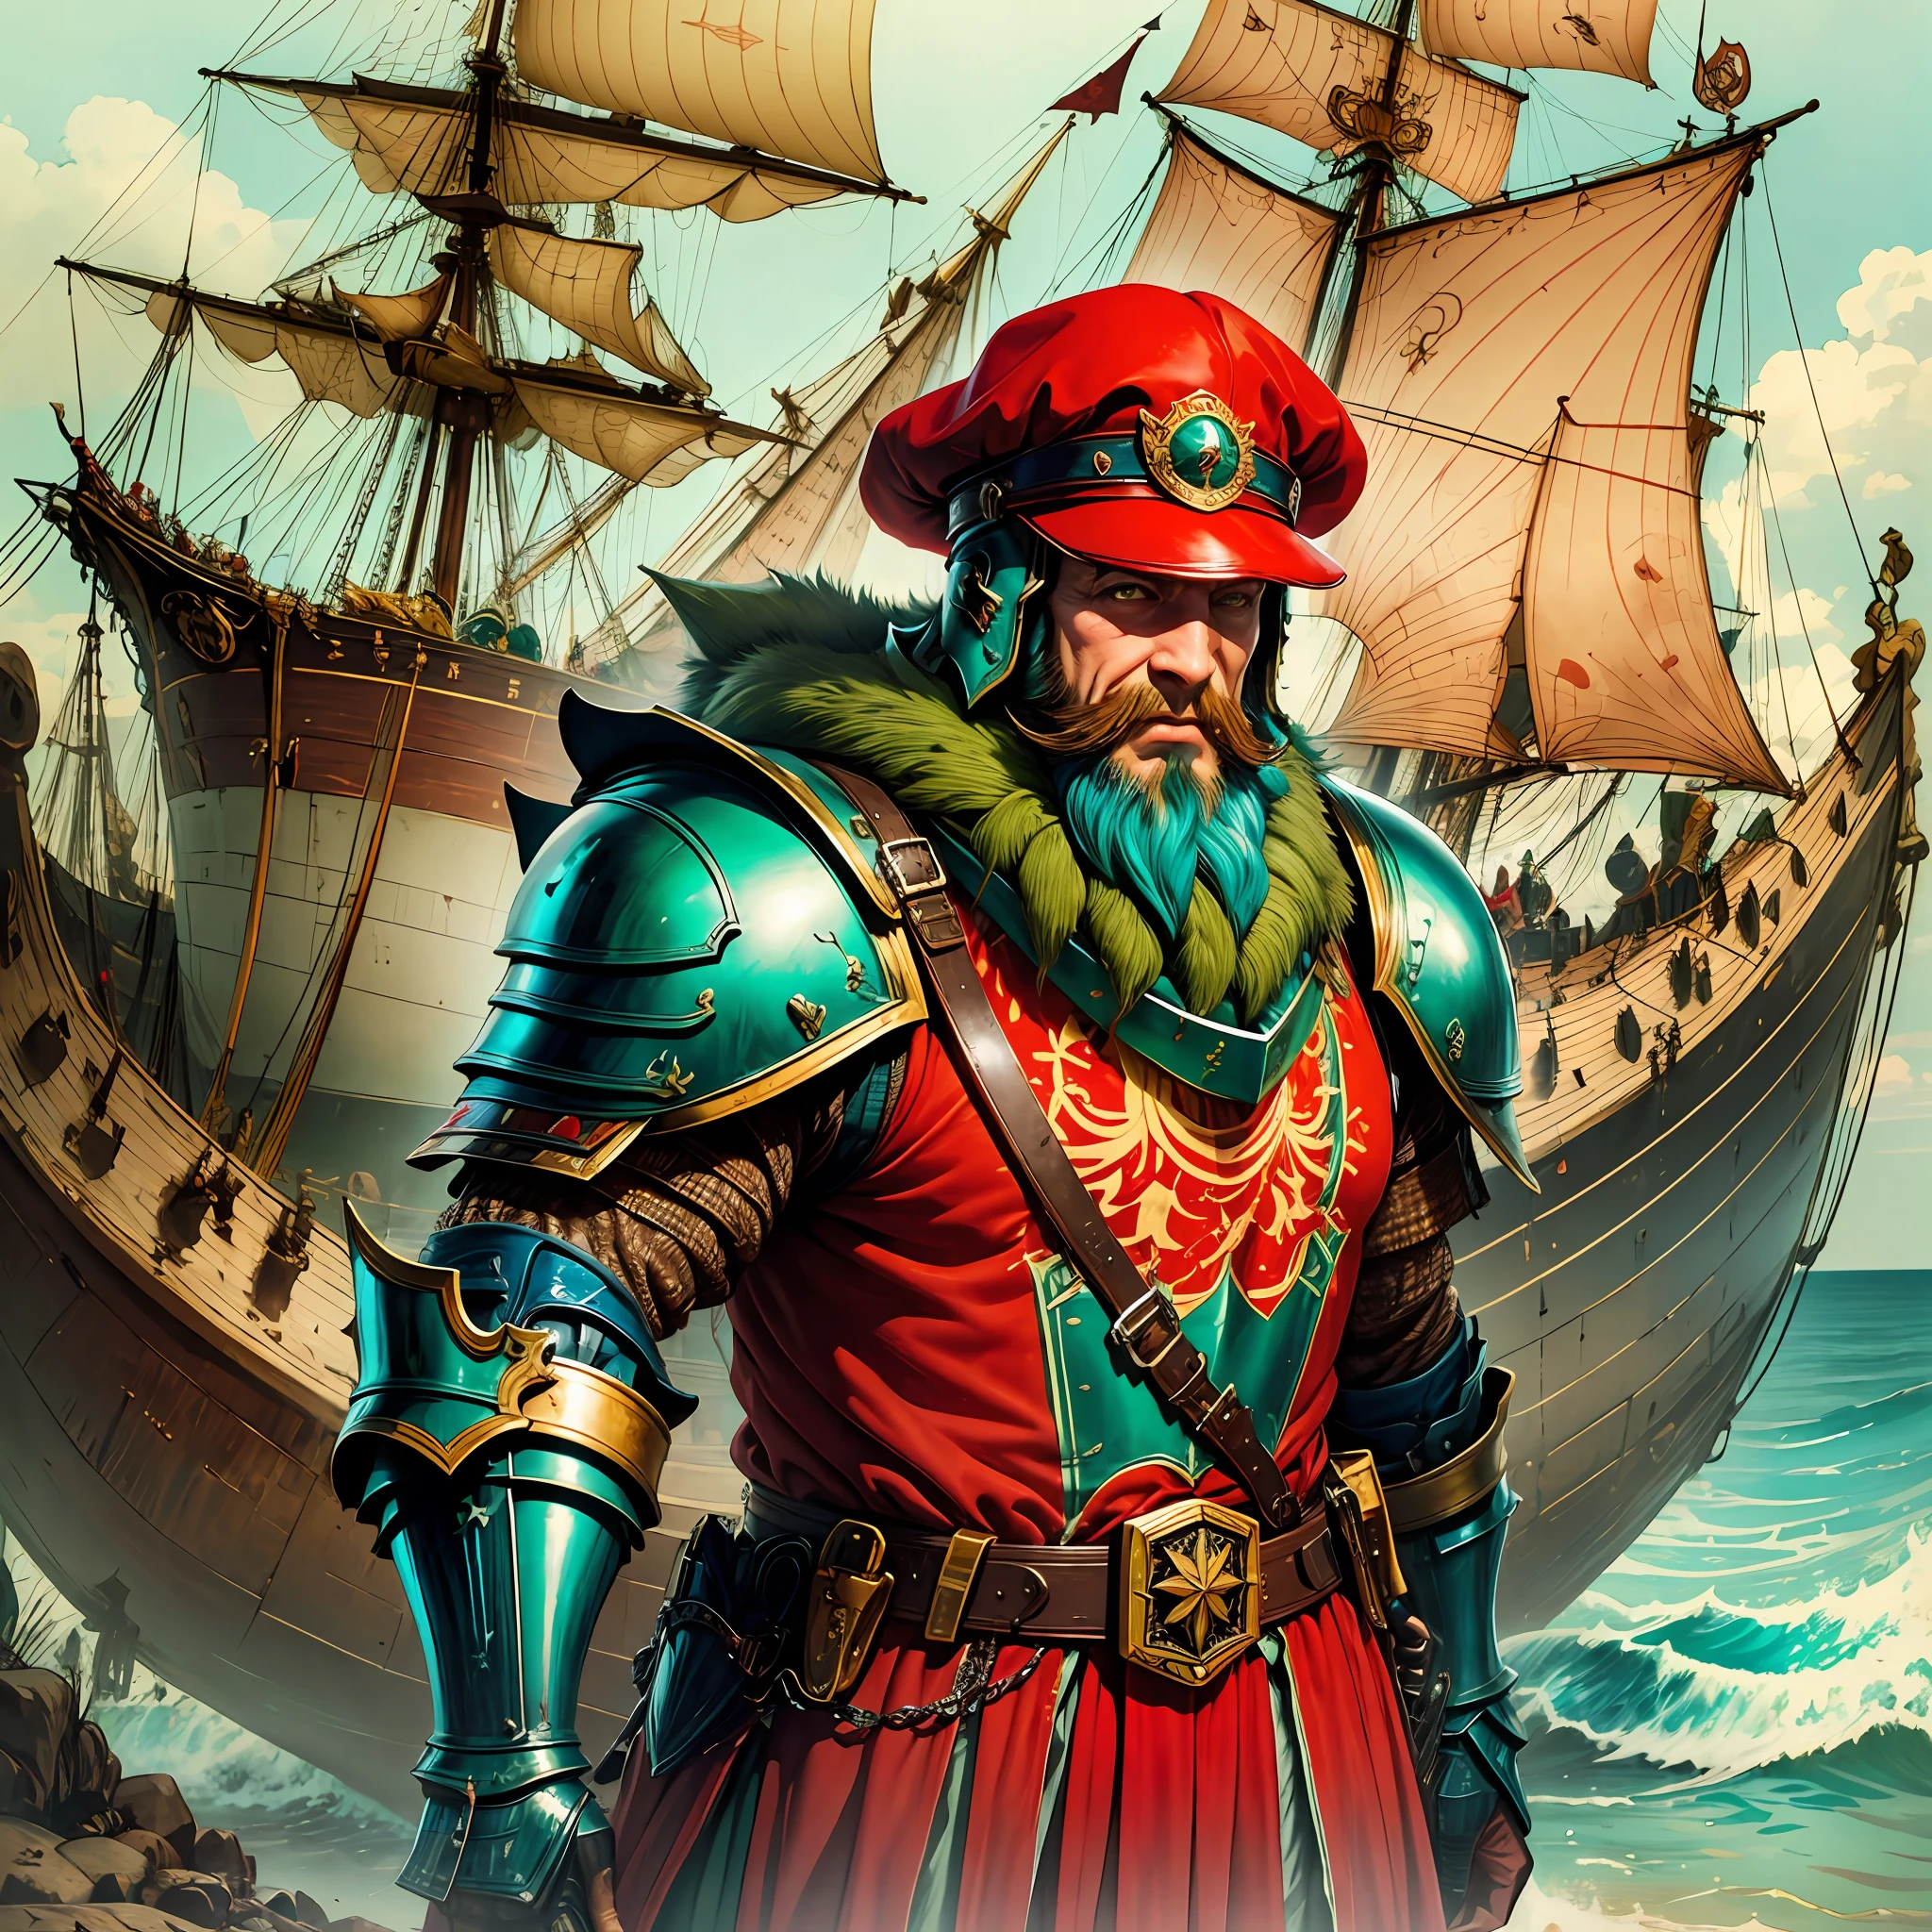 roter Hut, grüne Rüstung, Bart, großes Messer steht am Bug des Schiffes, sonniger, fröhlicher großer Junge, General